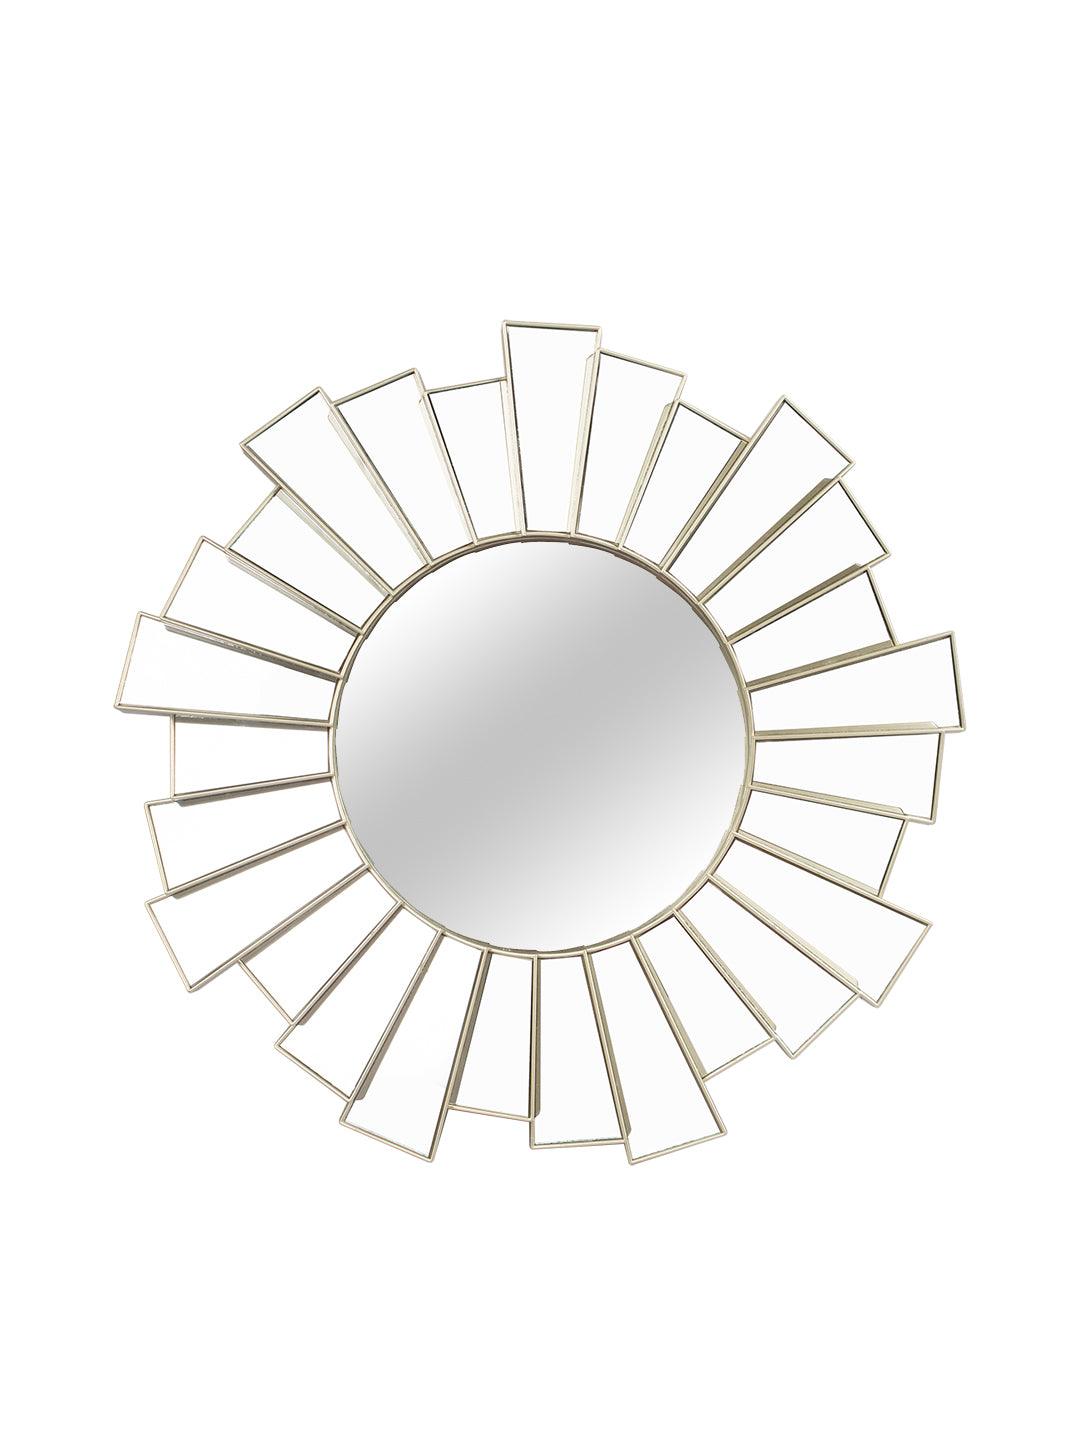 Plastic Golden Round Wall Mirror - MARKET 99